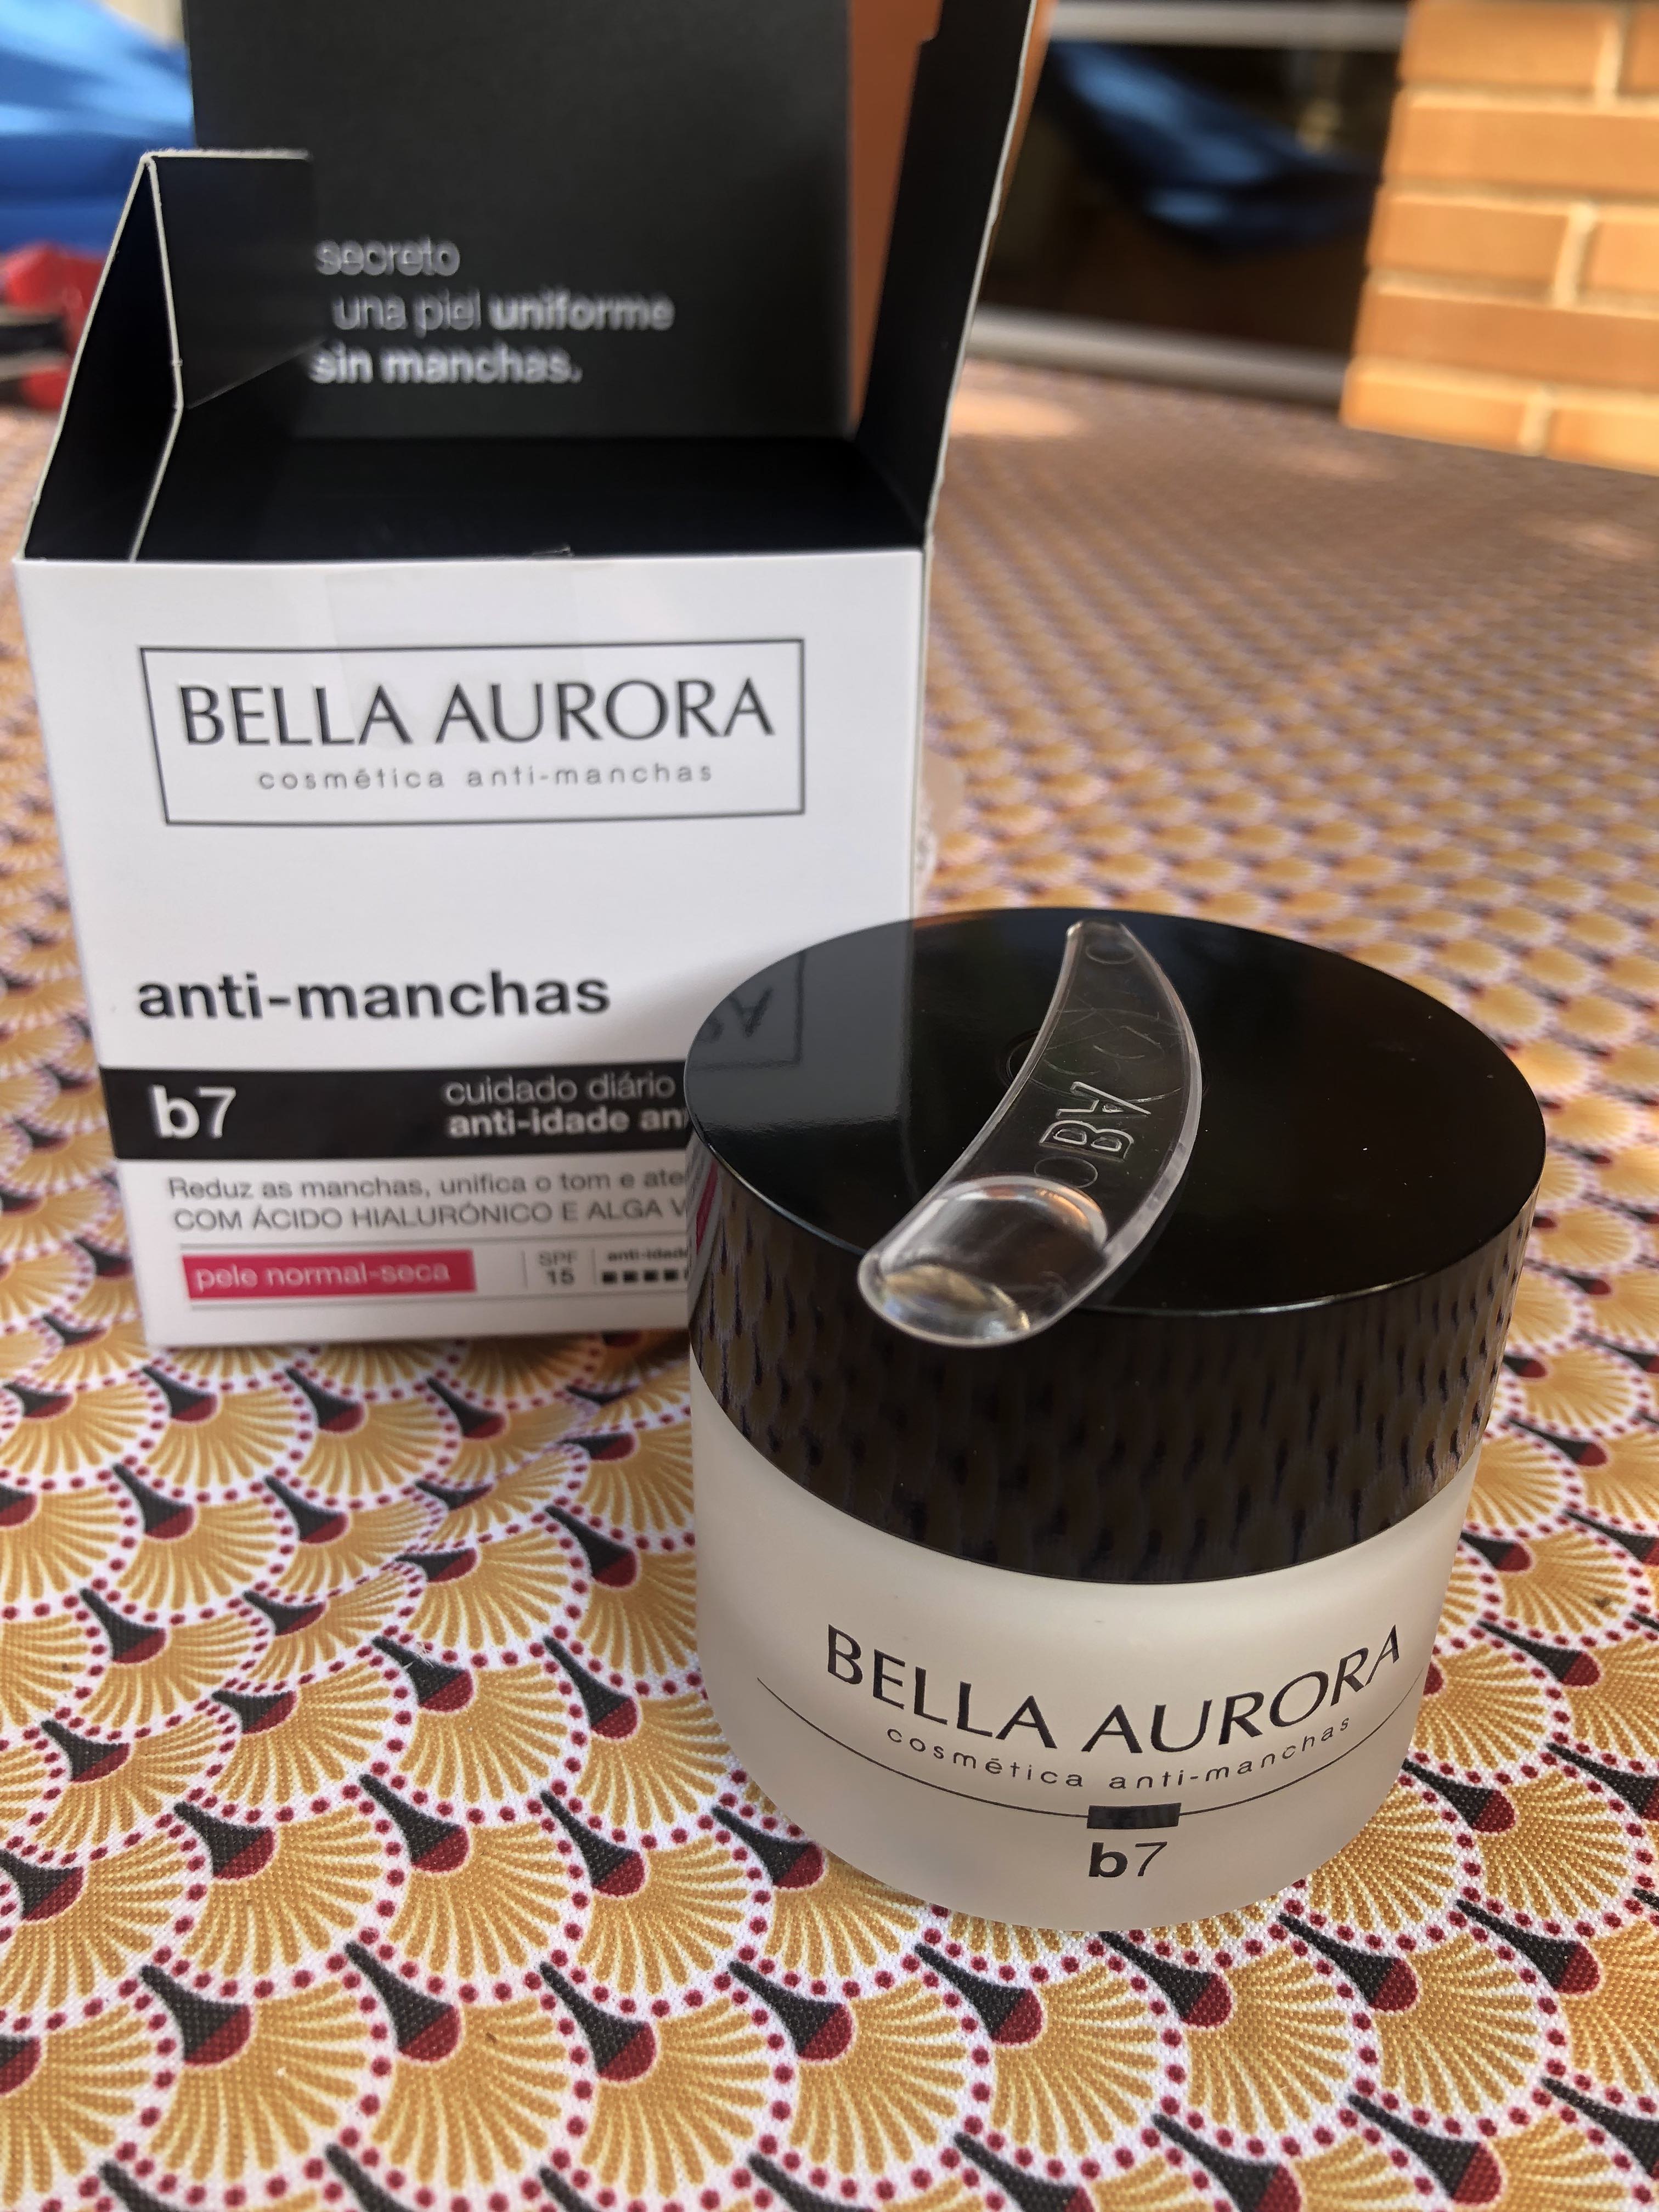 BELLA AURORA b7 Crema antimanchas y antiedad para piel normal-seca - 50 ml